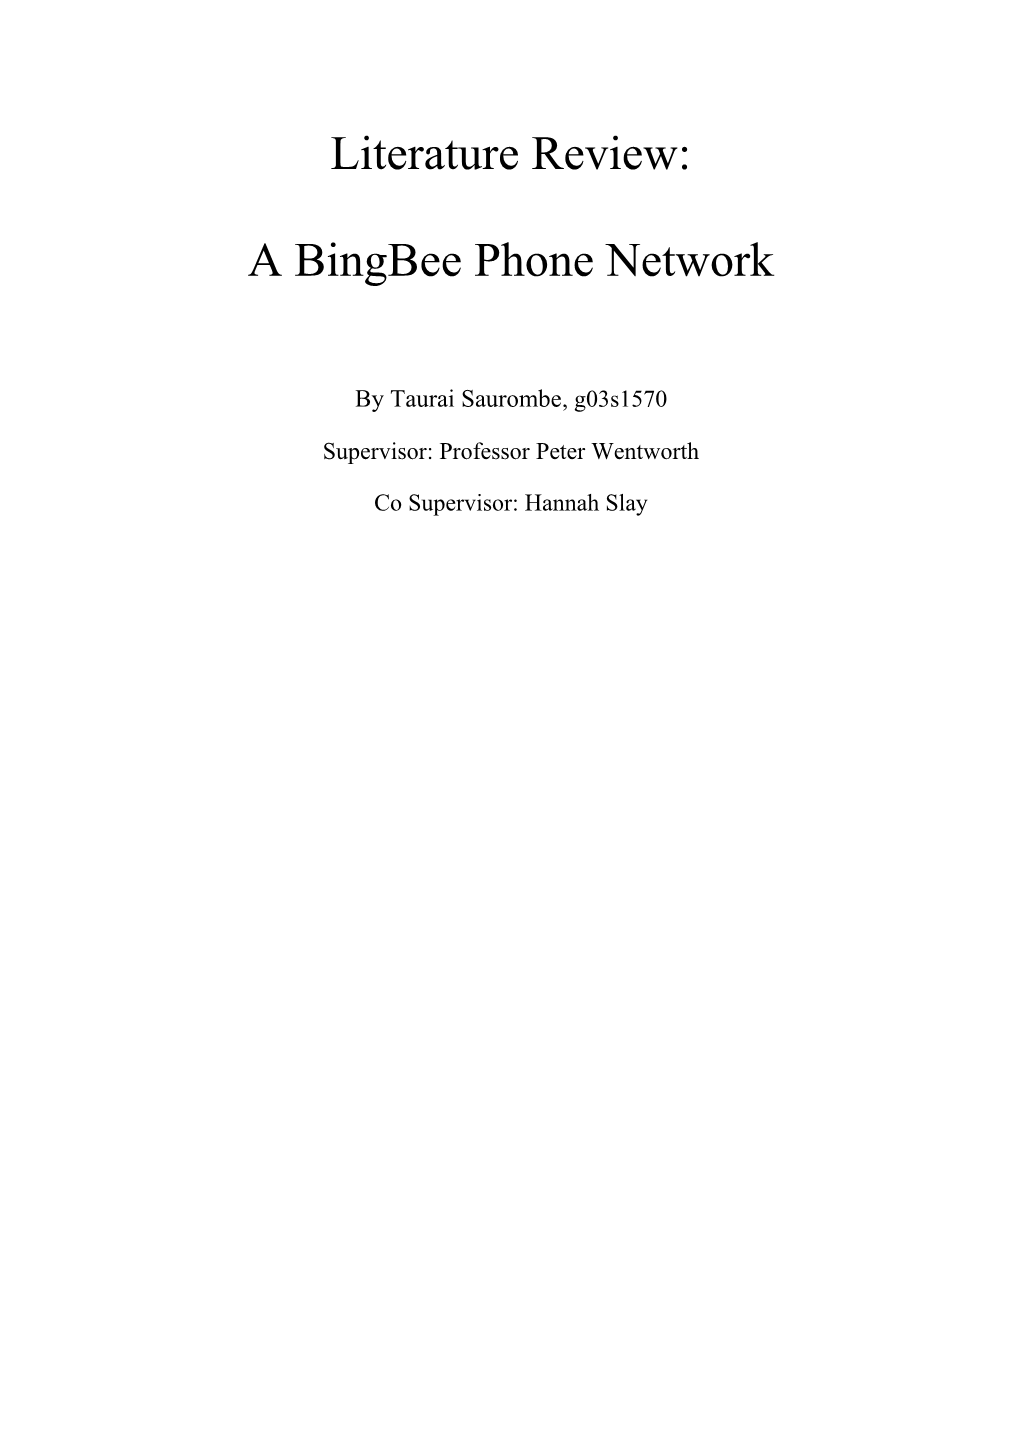 A Bingbee Phone Network